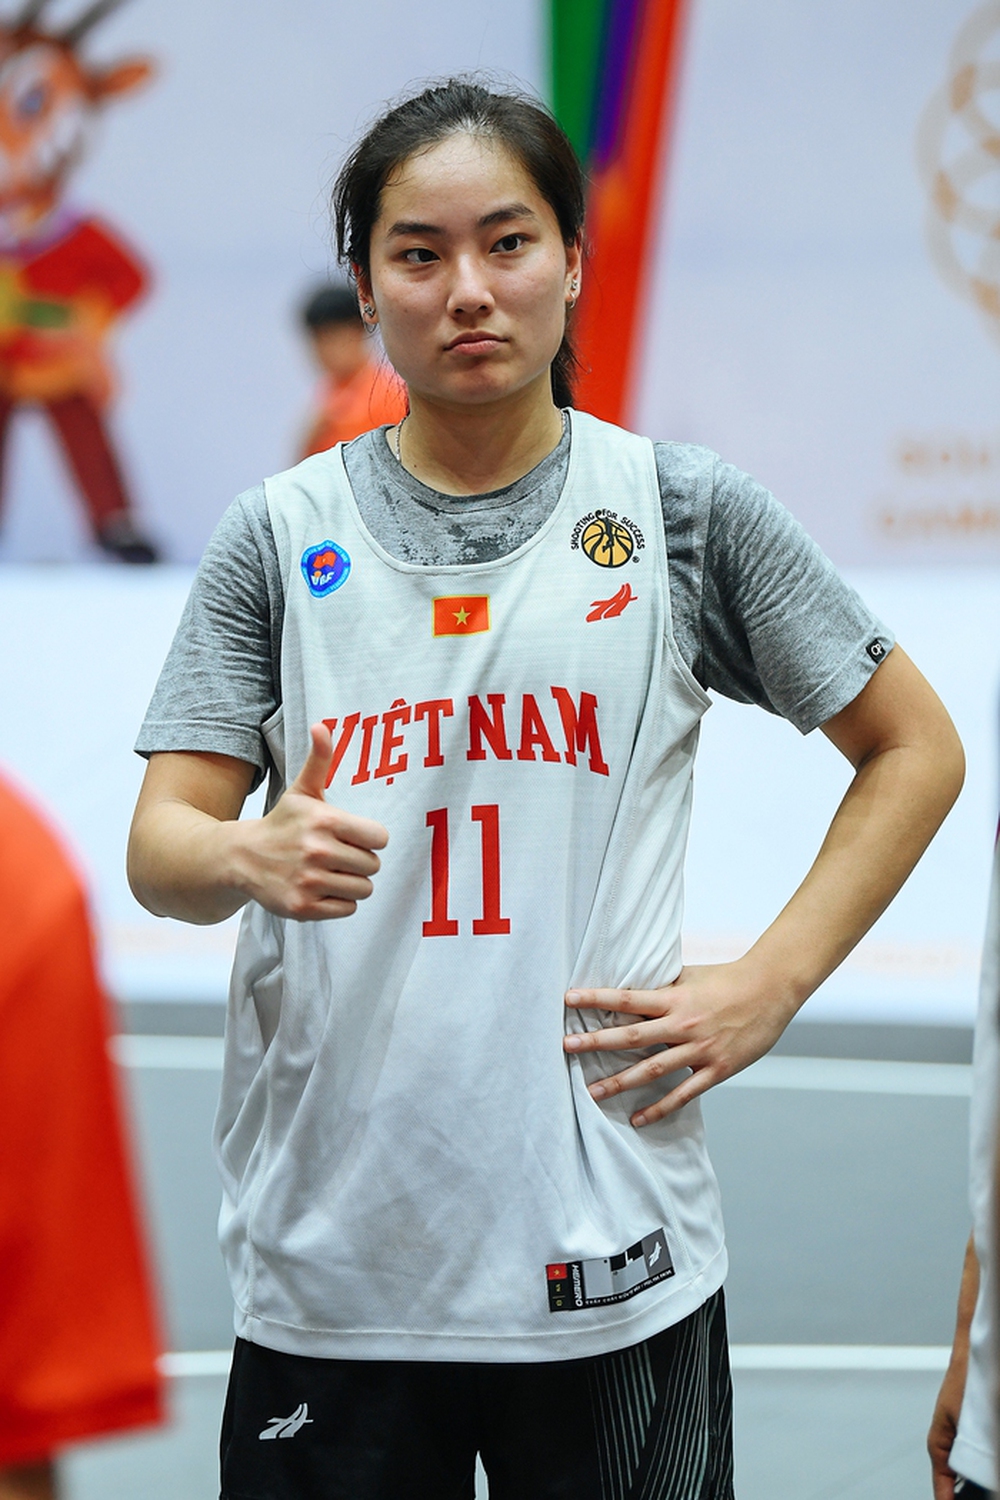 Tuyển bóng rổ nữ 3x3 Việt Nam hào hứng trong buổi tập đầu tiên tại NTĐ Thanh Trì - Ảnh 14.